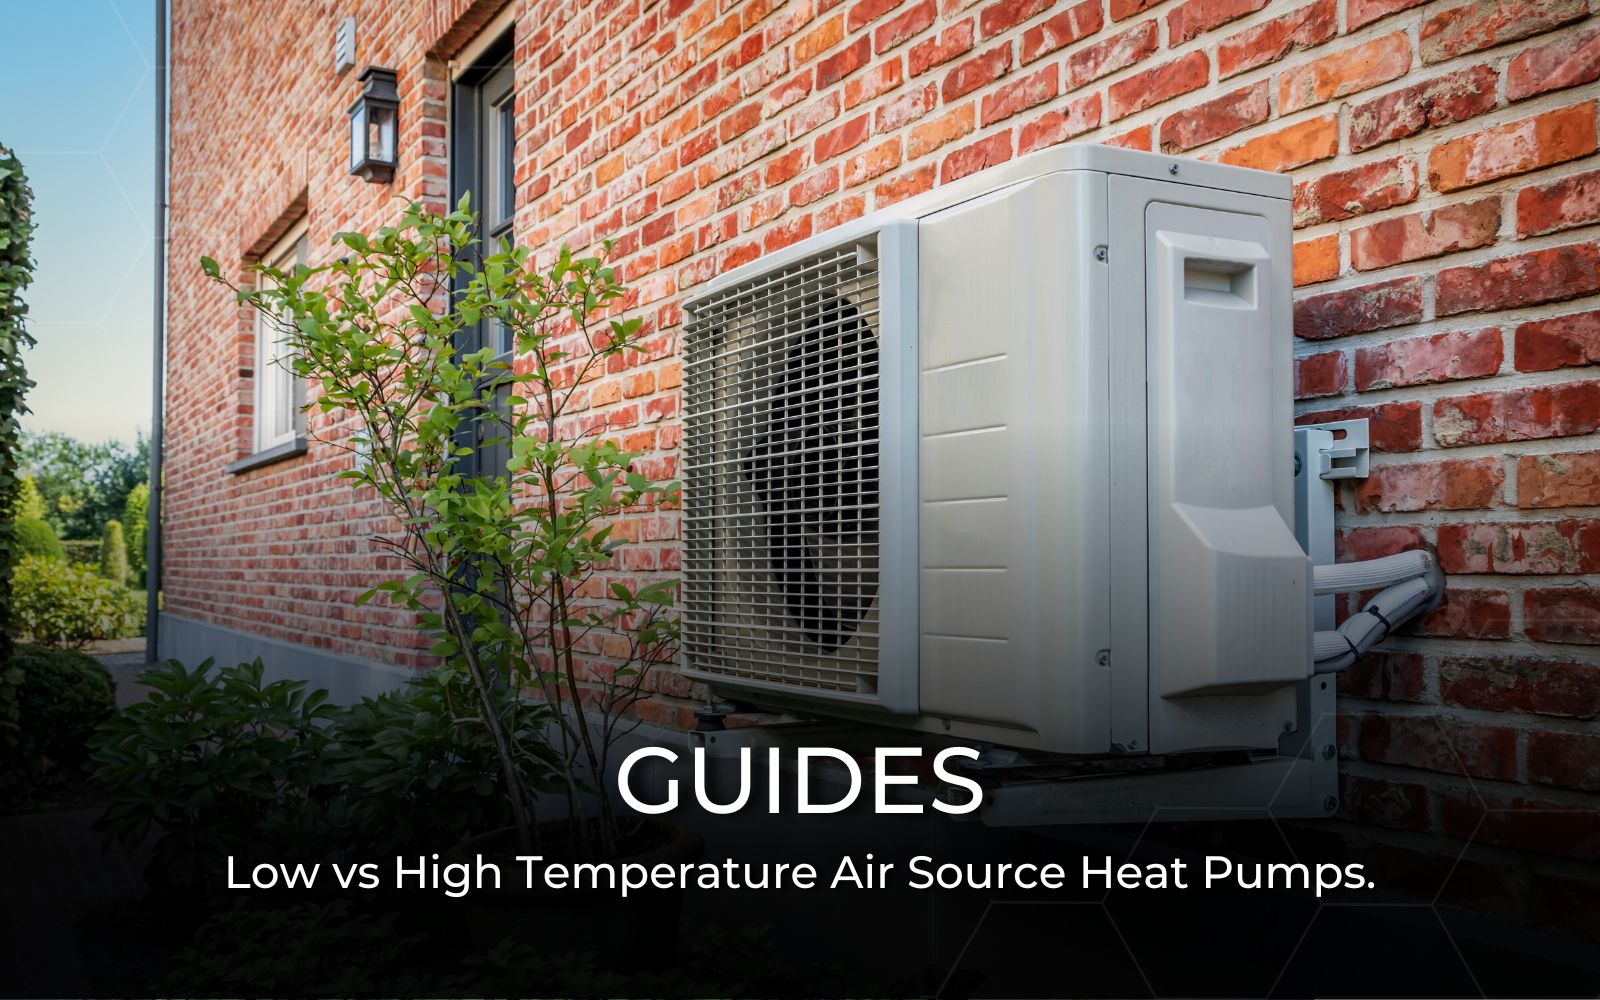 Low vs High Temperature Air Source Heat Pumps